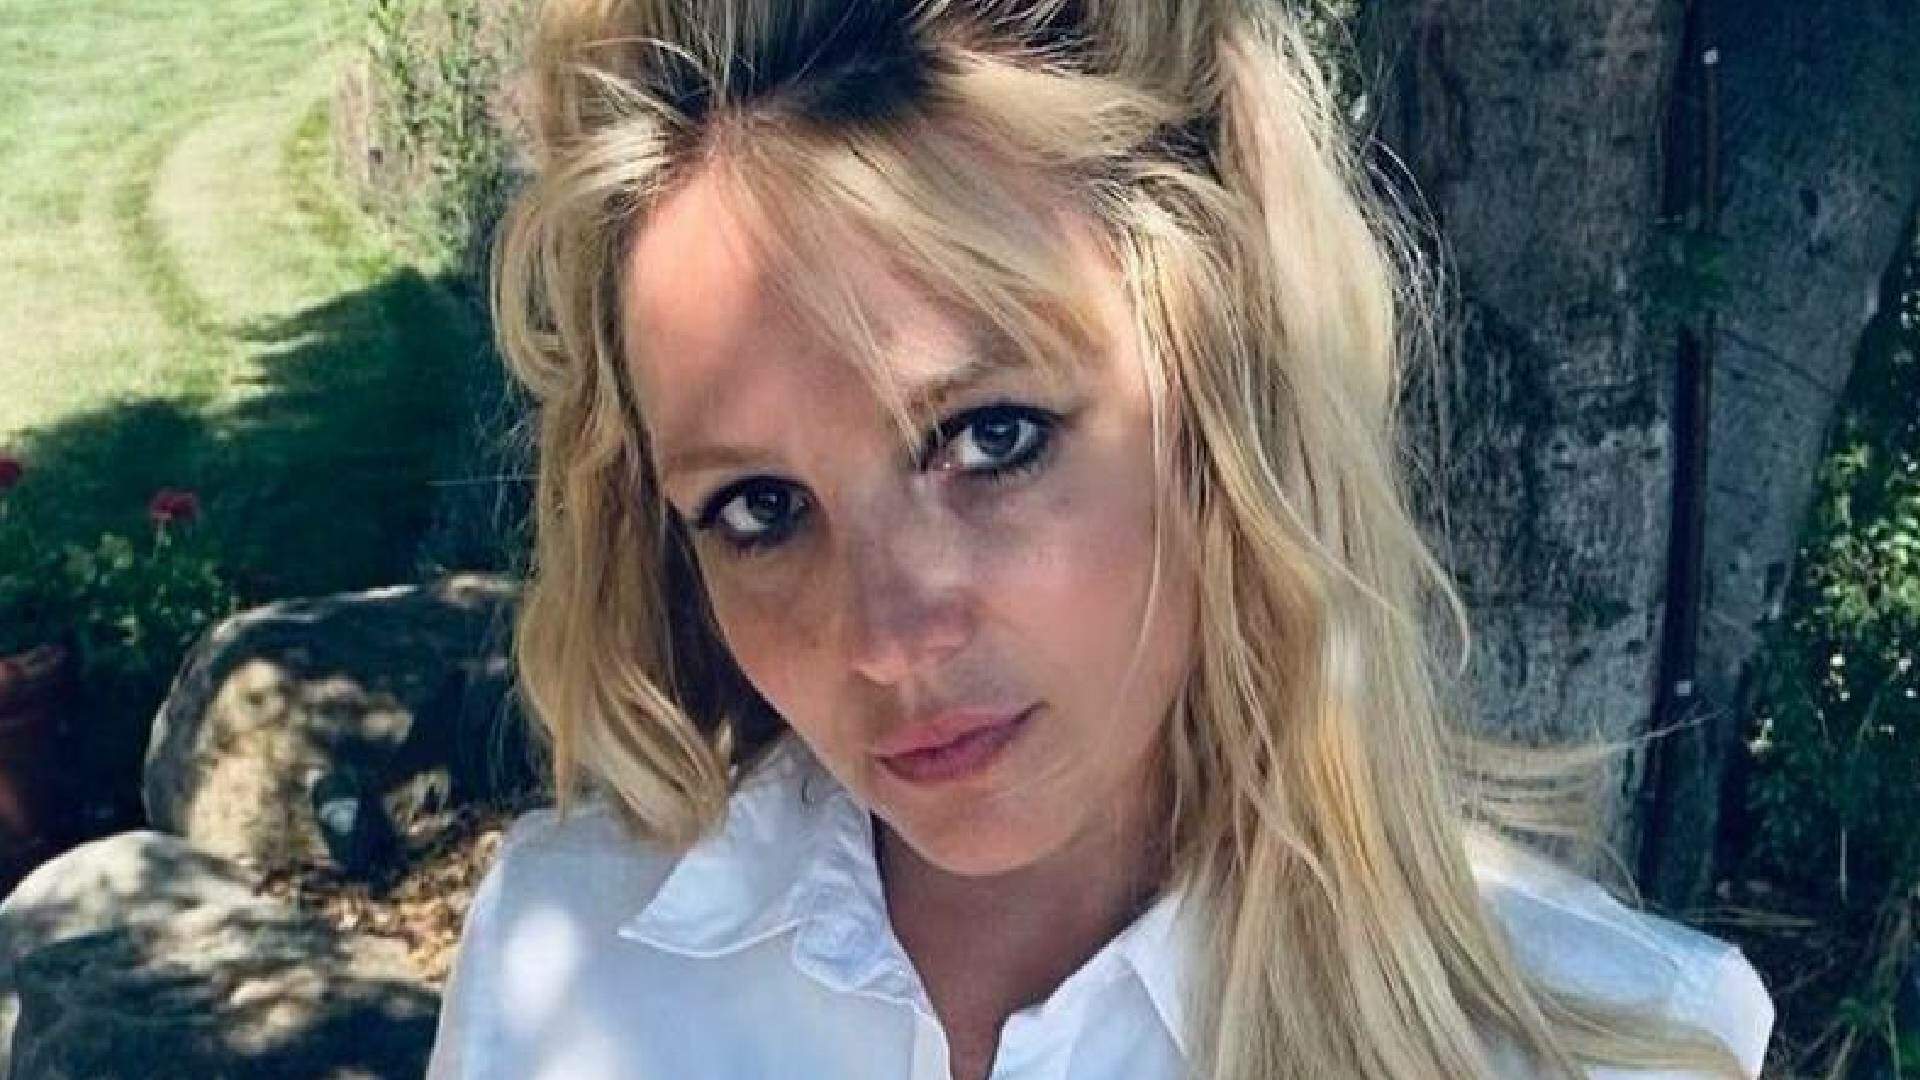 Despedida dos palcos! Britney Spears faz anúncio repentino sobre carreira musical e intriga fãs - Metropolitana FM